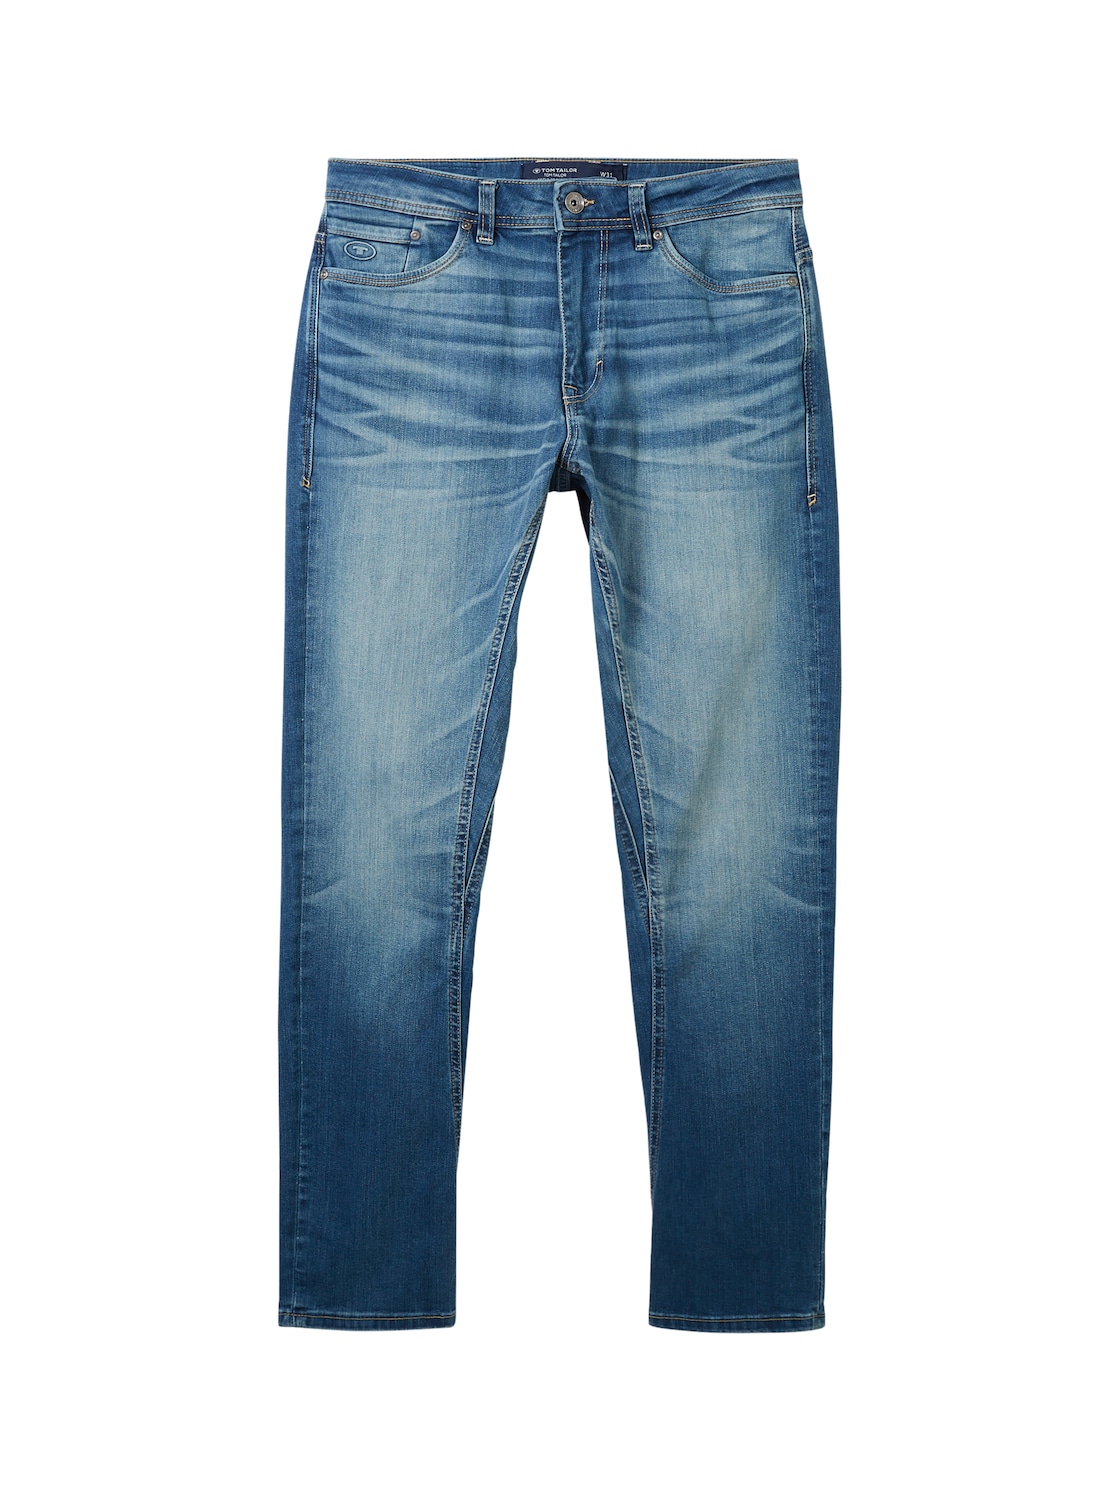 TOM TAILOR Herren Regular Tapered Jeans mit recycelter Baumwolle, blau, Uni, Gr. 34/32 von Tom Tailor